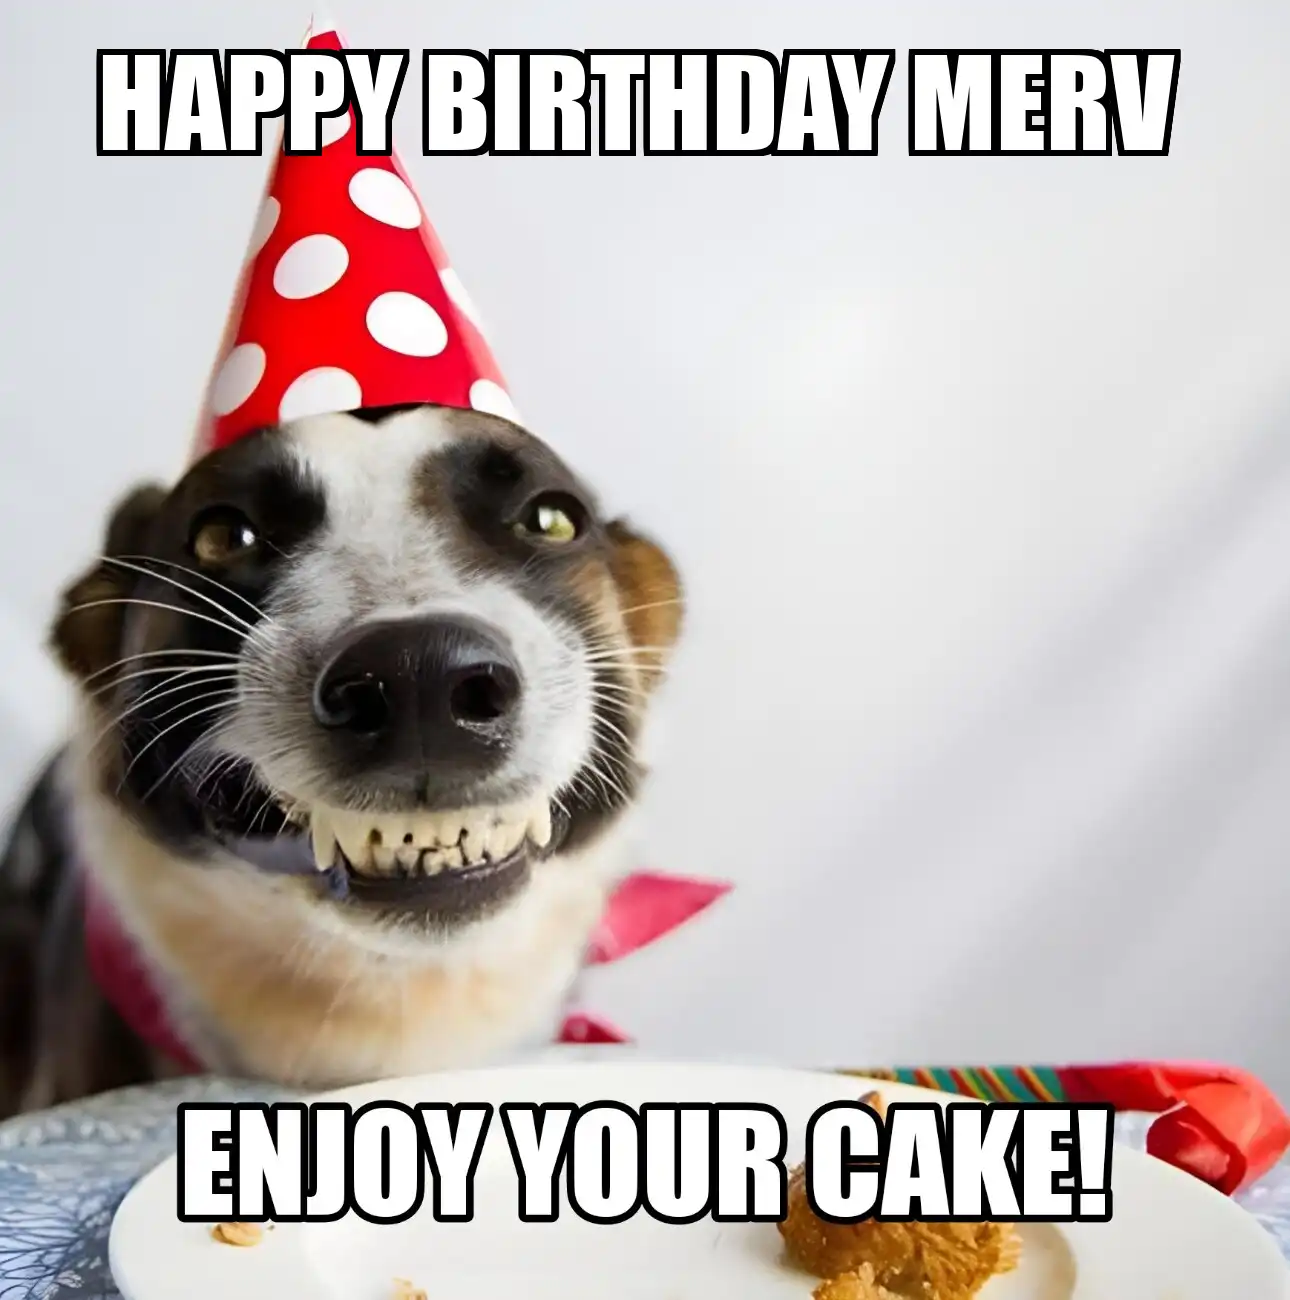 Happy Birthday Merv Enjoy Your Cake Dog Meme